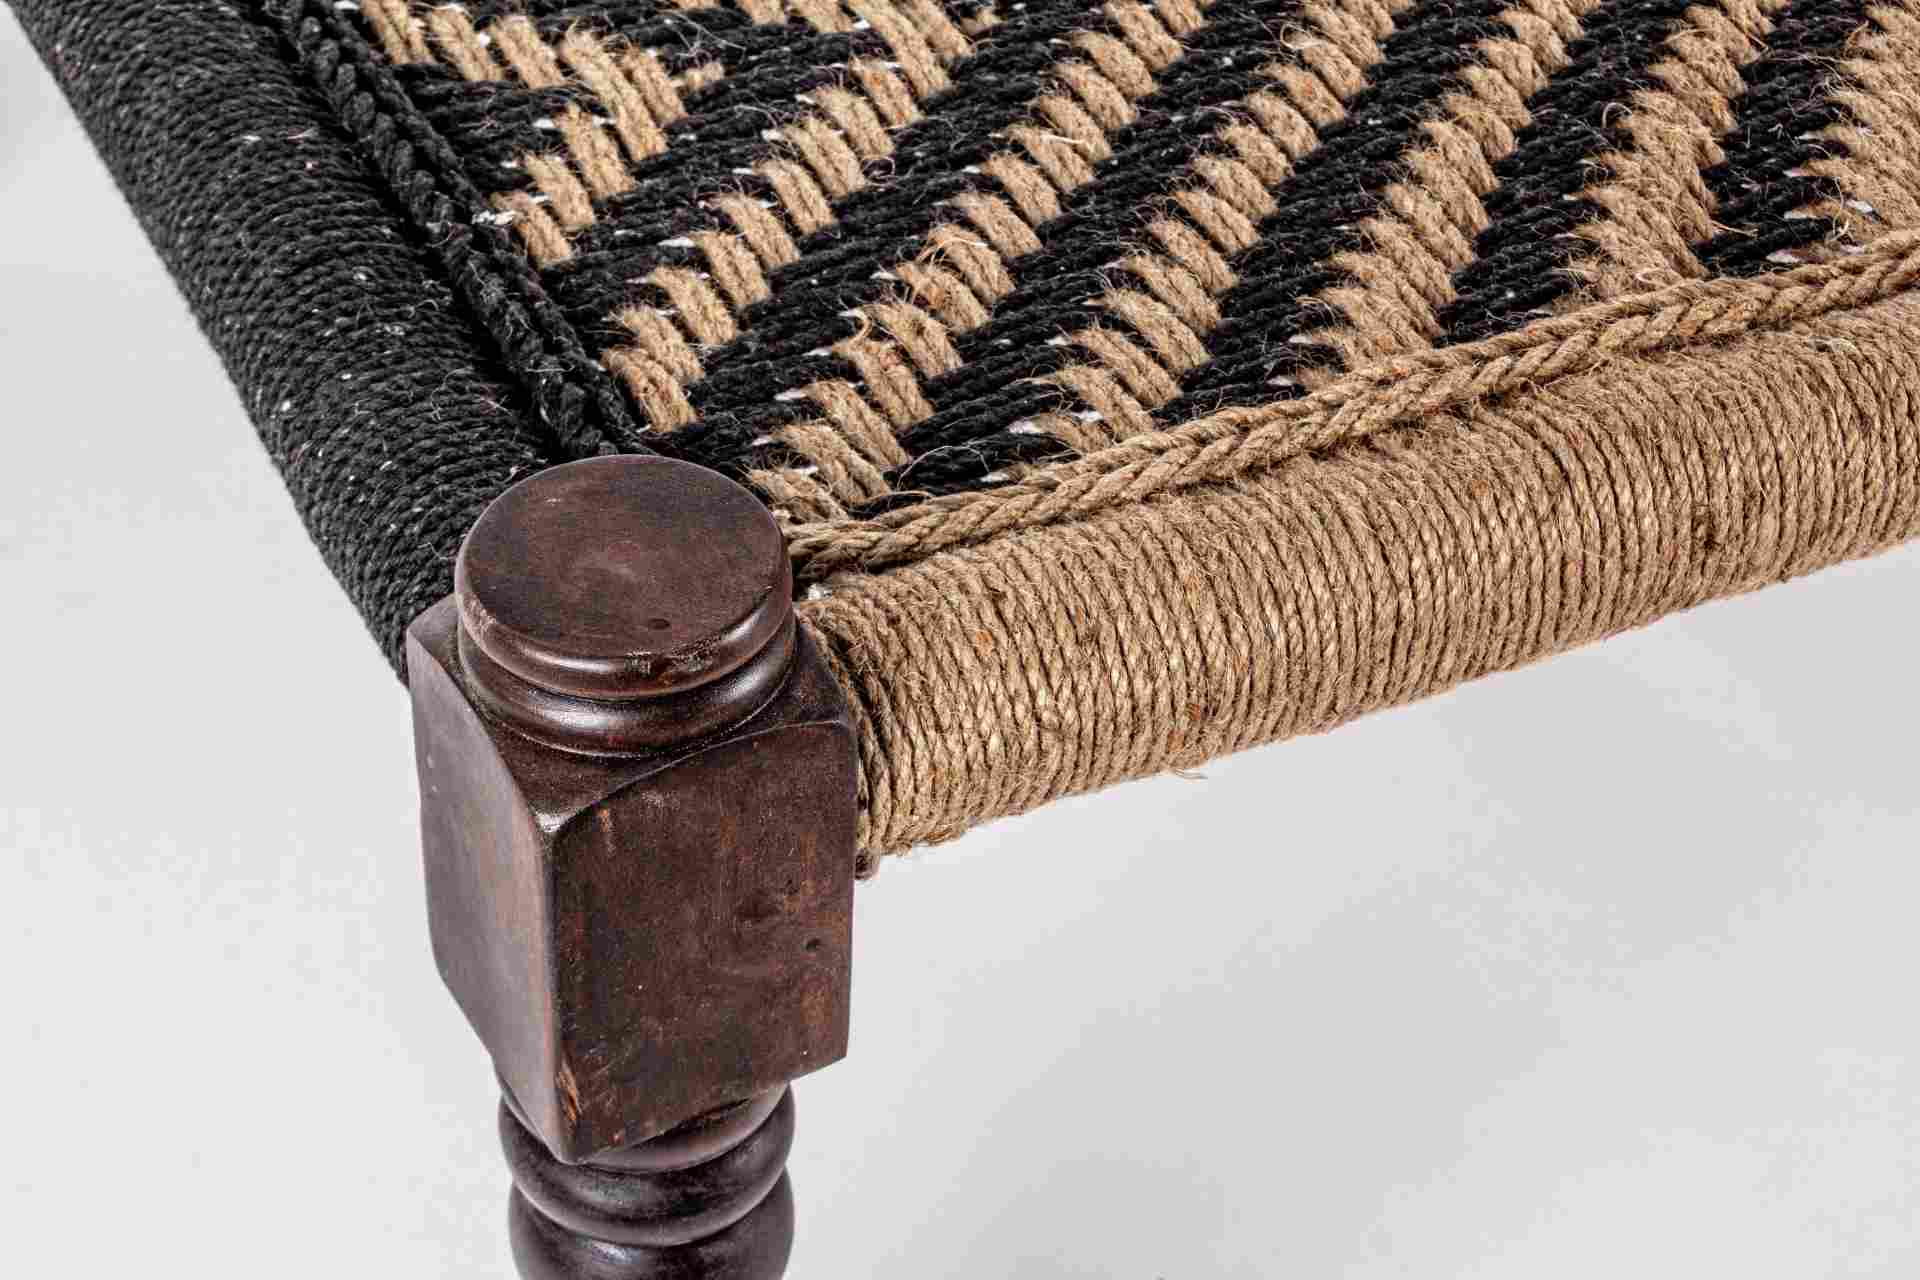 Die Bank Khat überzeugt mit ihrem klassischen aber auch orientalischen Design. Gefertigt wurde die Bank aus Sheesham-Holz, welches einen schwarzen Farbton besitzt. Die Sitzfläche ist aus Baumwoll-Seil gefertigt. Die Breite der Bank beträgt 176 cm.